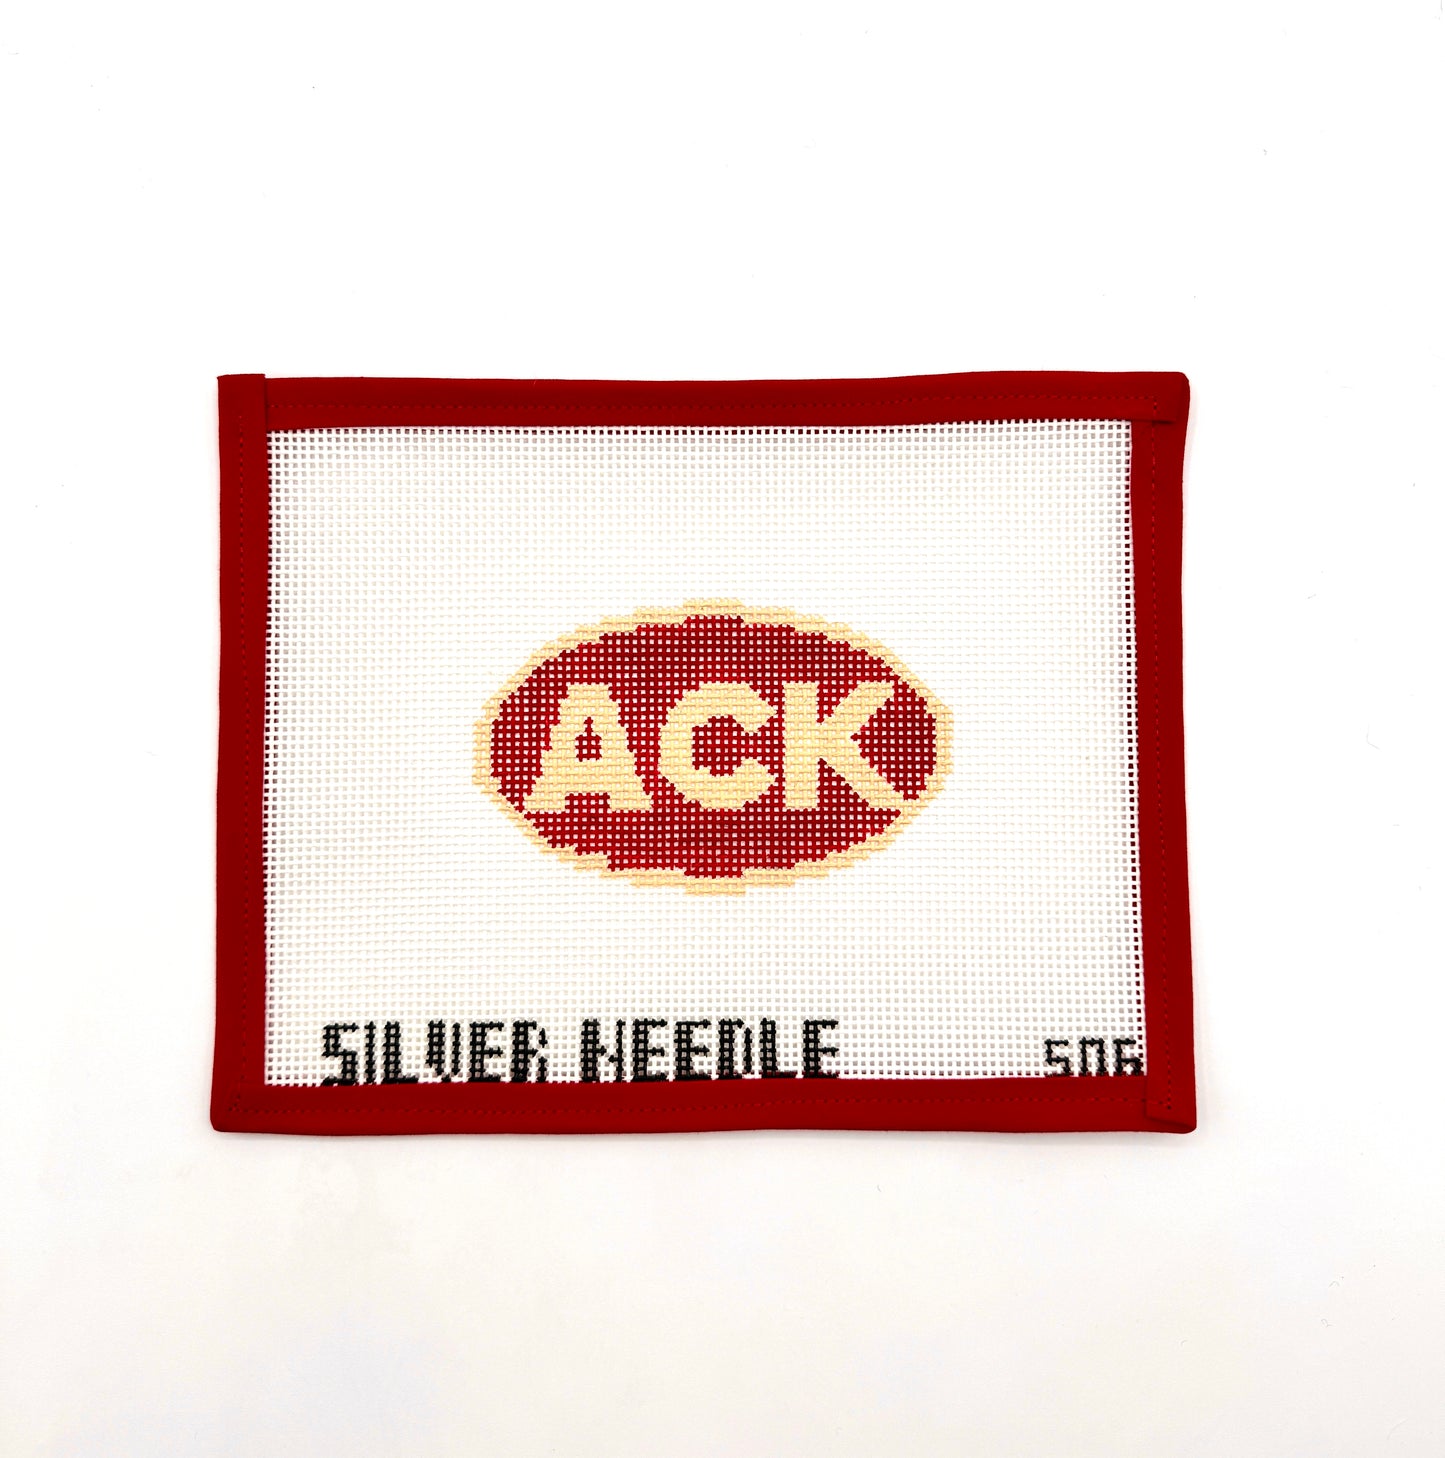 ACK bumper sticker